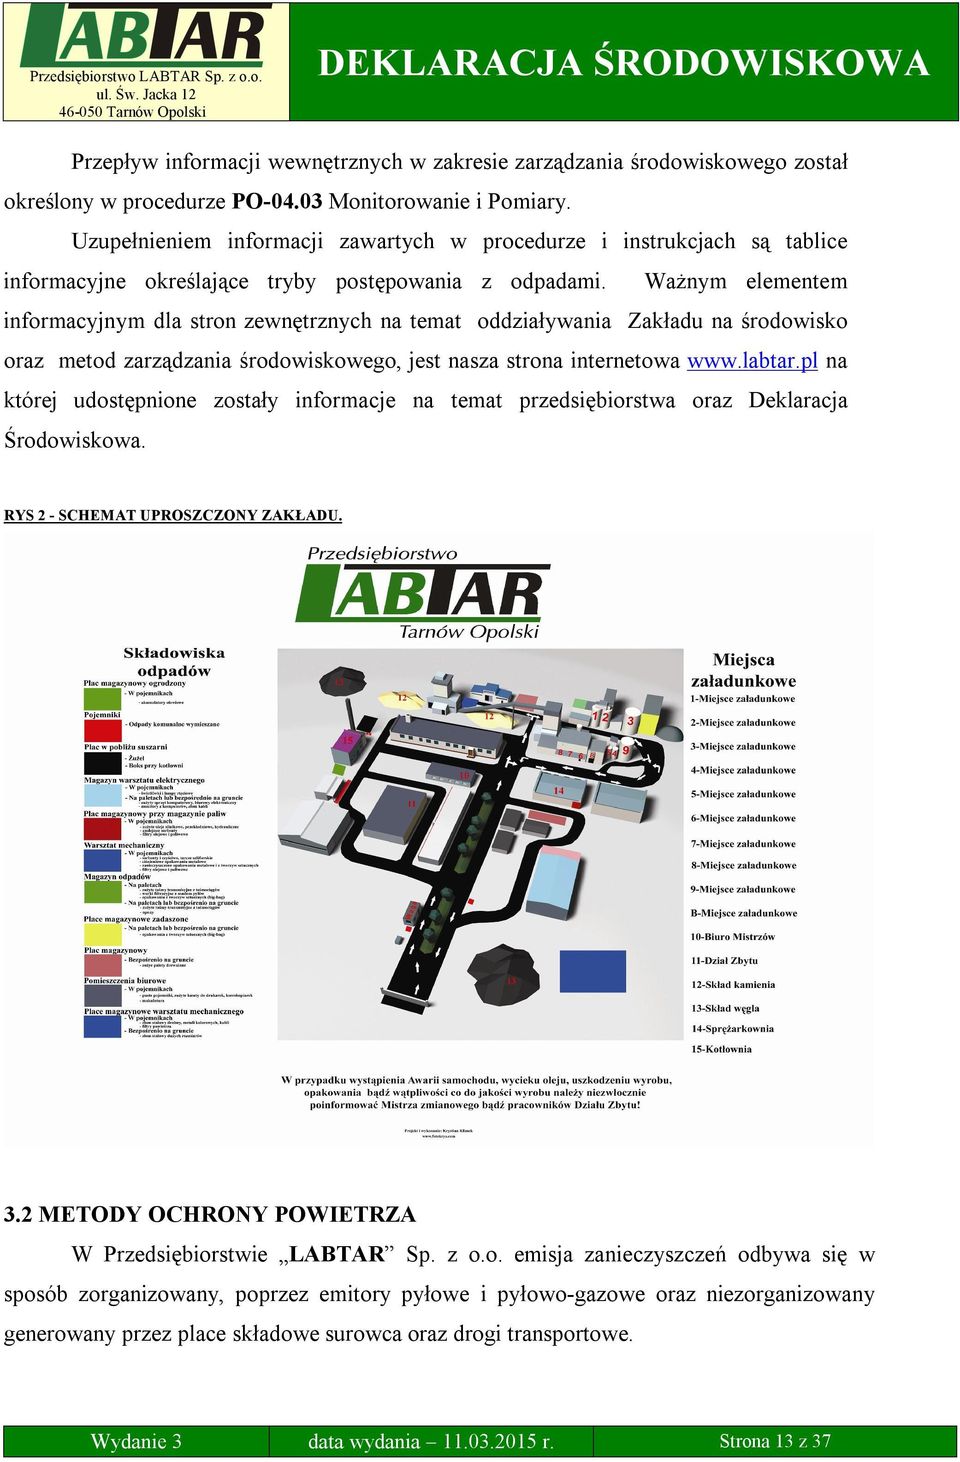 Ważnym elementem informacyjnym dla stron zewnętrznych na temat oddziaływania Zakładu na środowisko oraz metod zarządzania środowiskowego, jest nasza strona internetowa www.labtar.